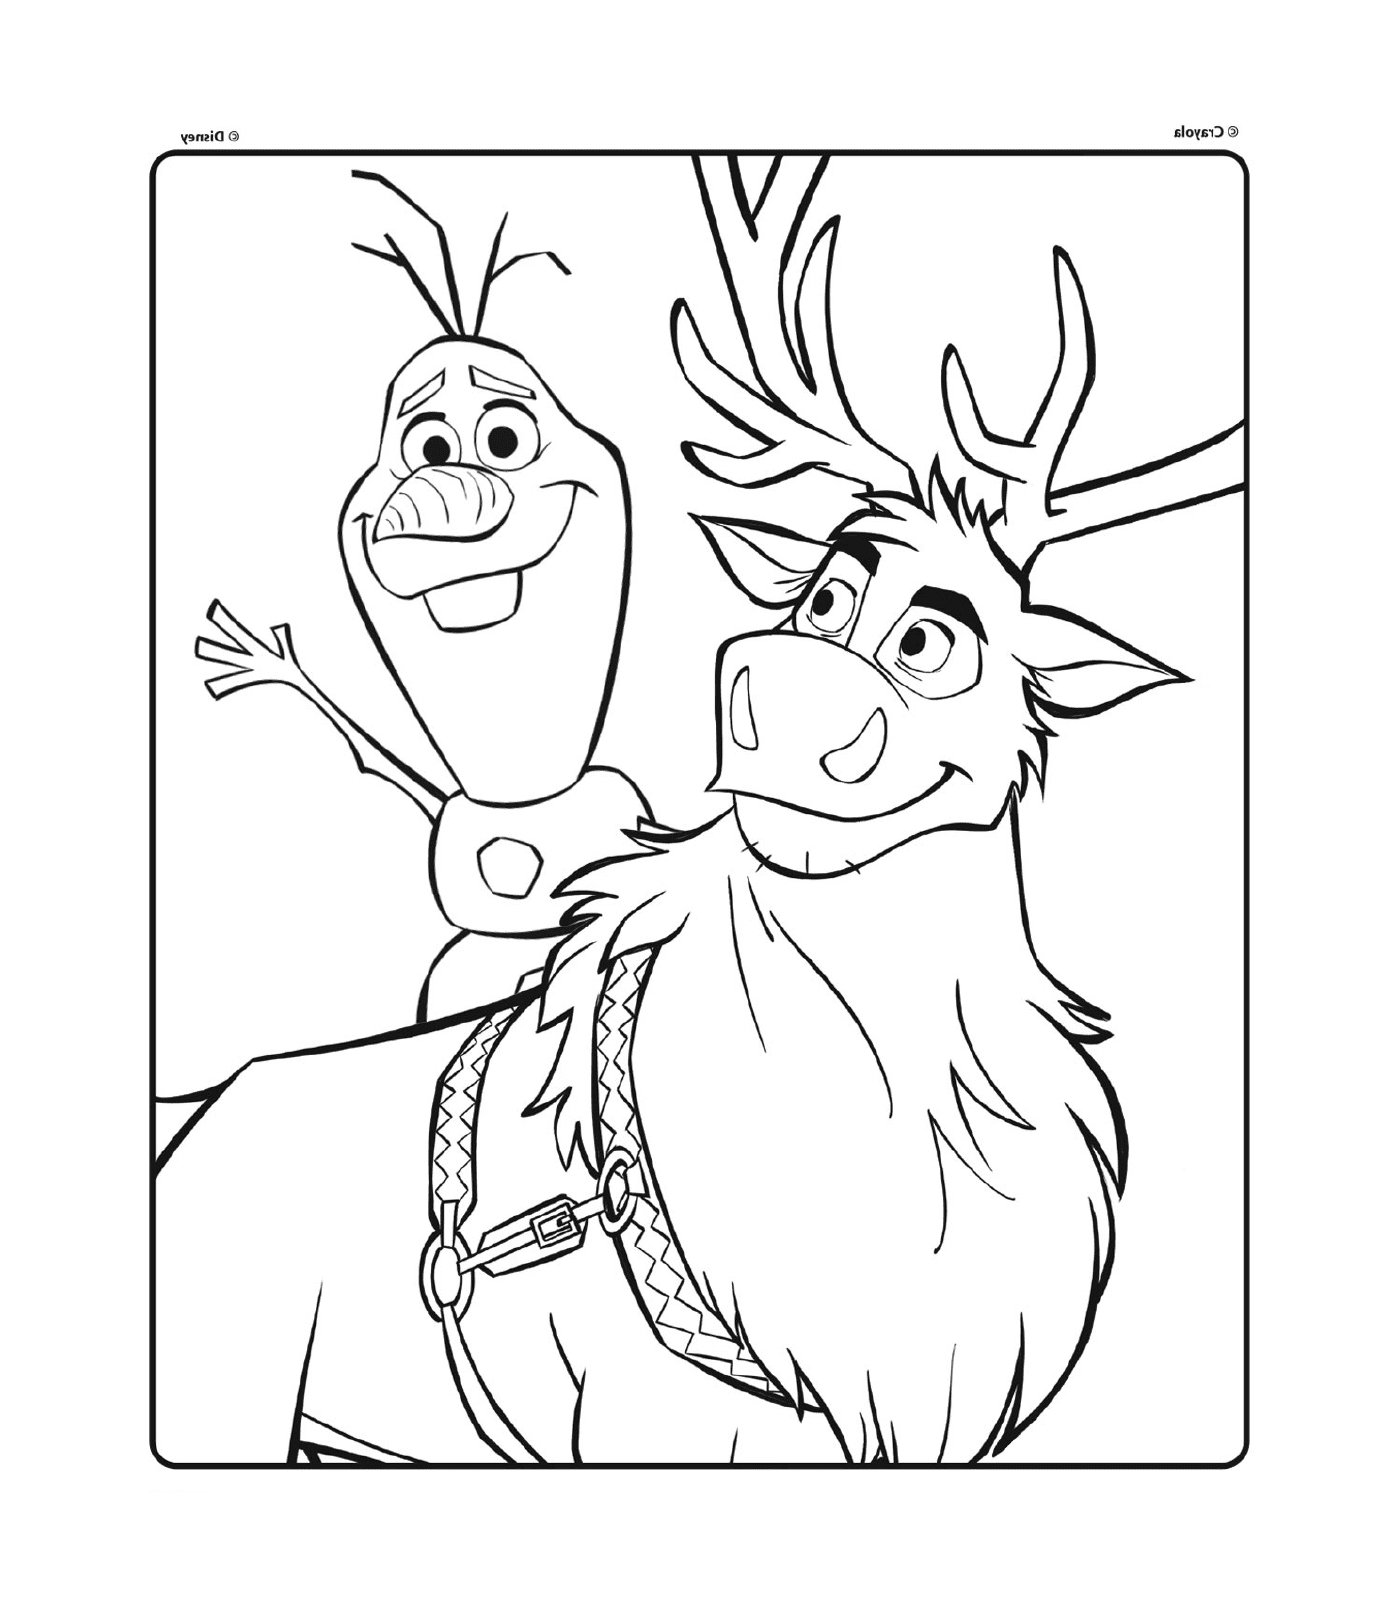  Olaf und Sven von Disney Die Schneekönigin 2 